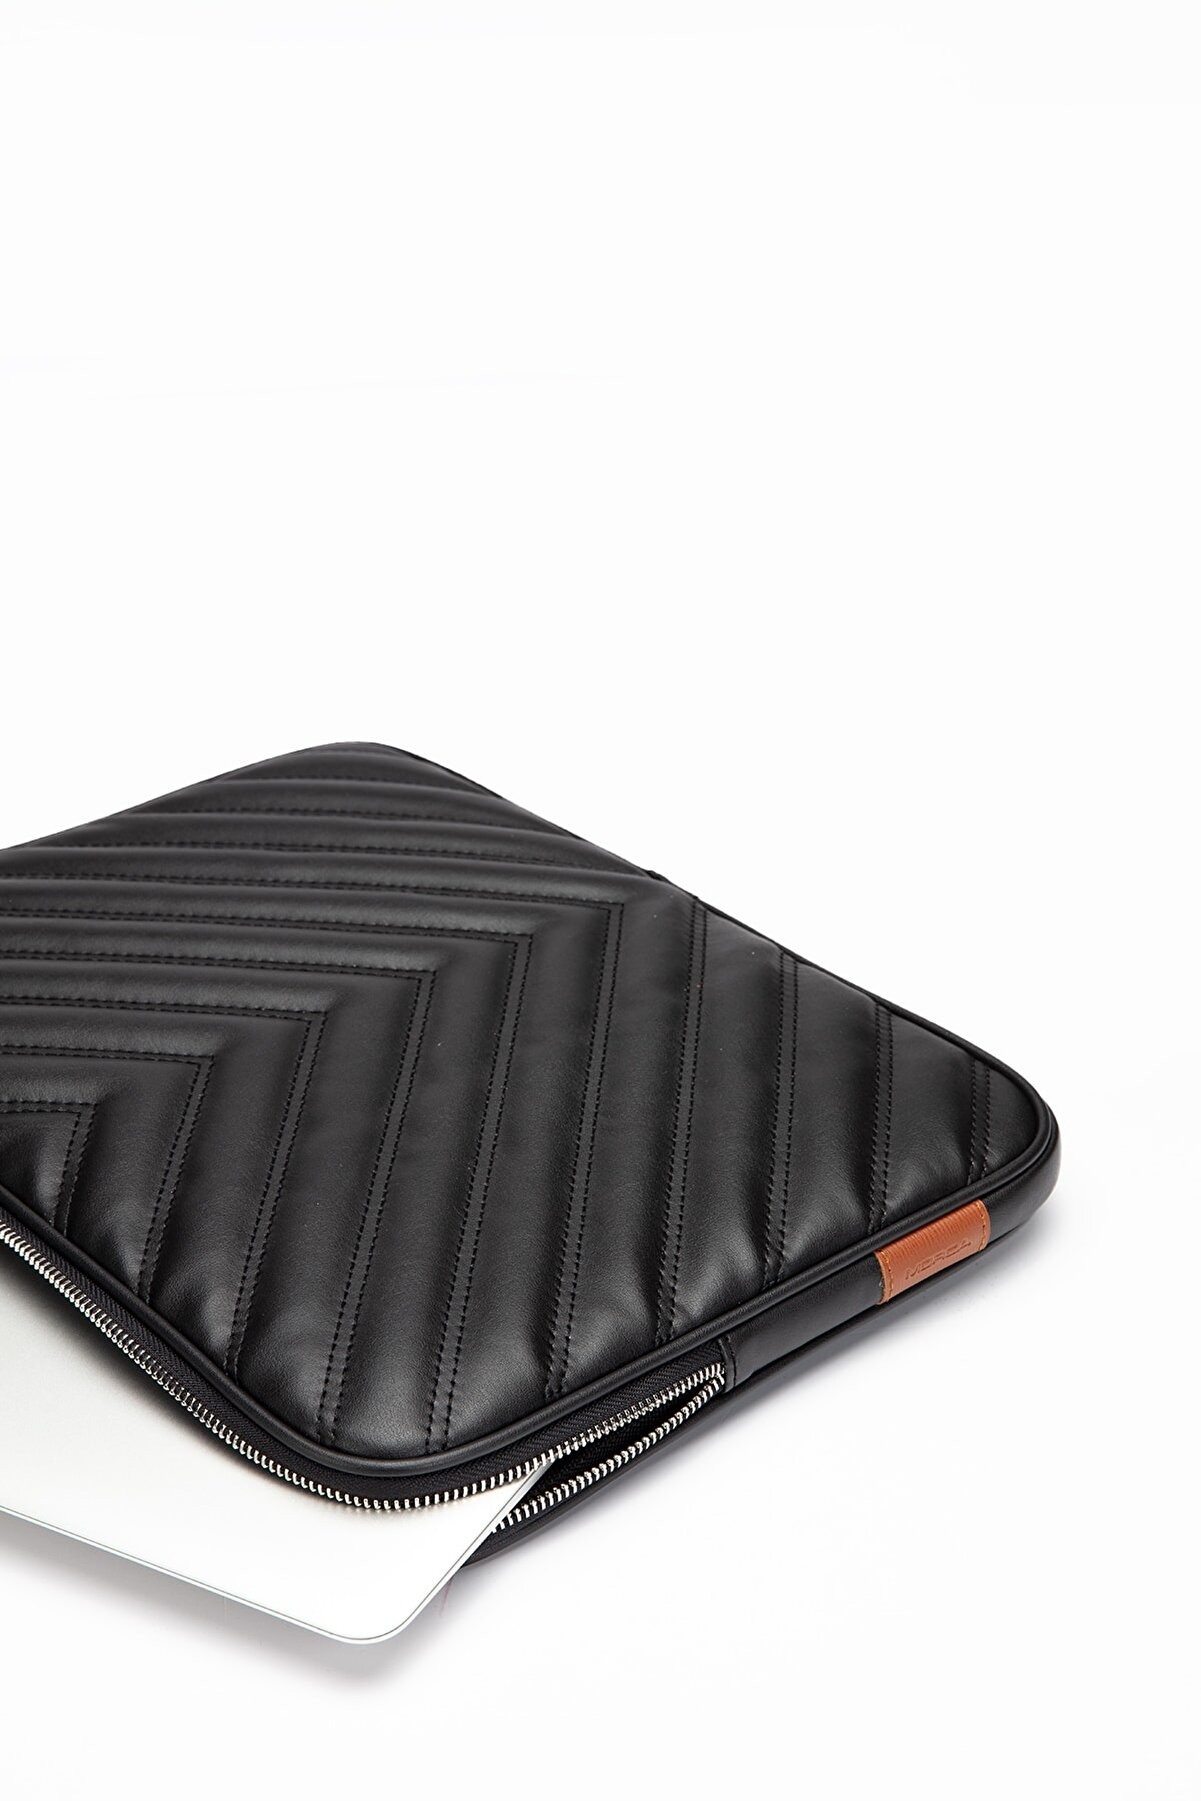 MORCA Omuz Askılı Notebook Çanta Tablet Laptop Kılıfı  13"-14" V Model Deri Siyah